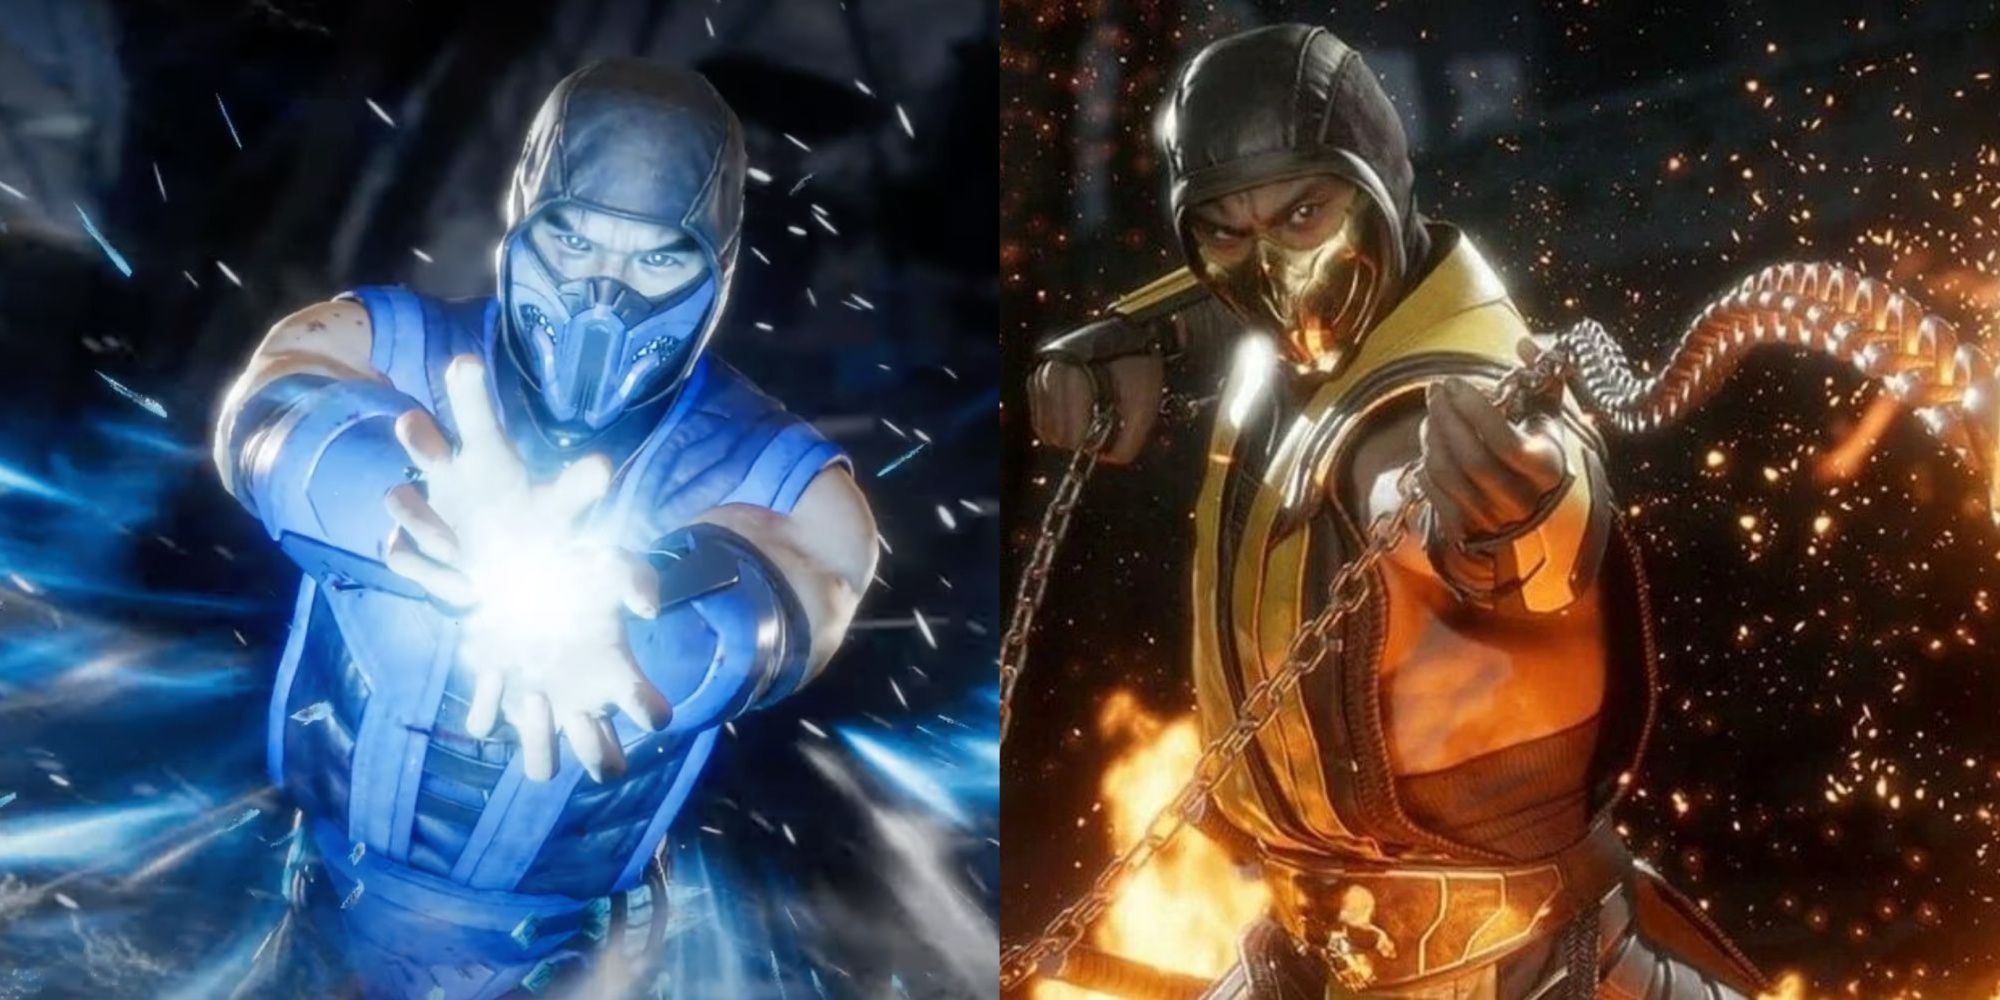 The Complete History Of Scorpion And Sub-Zero's Rivalry In Mortal